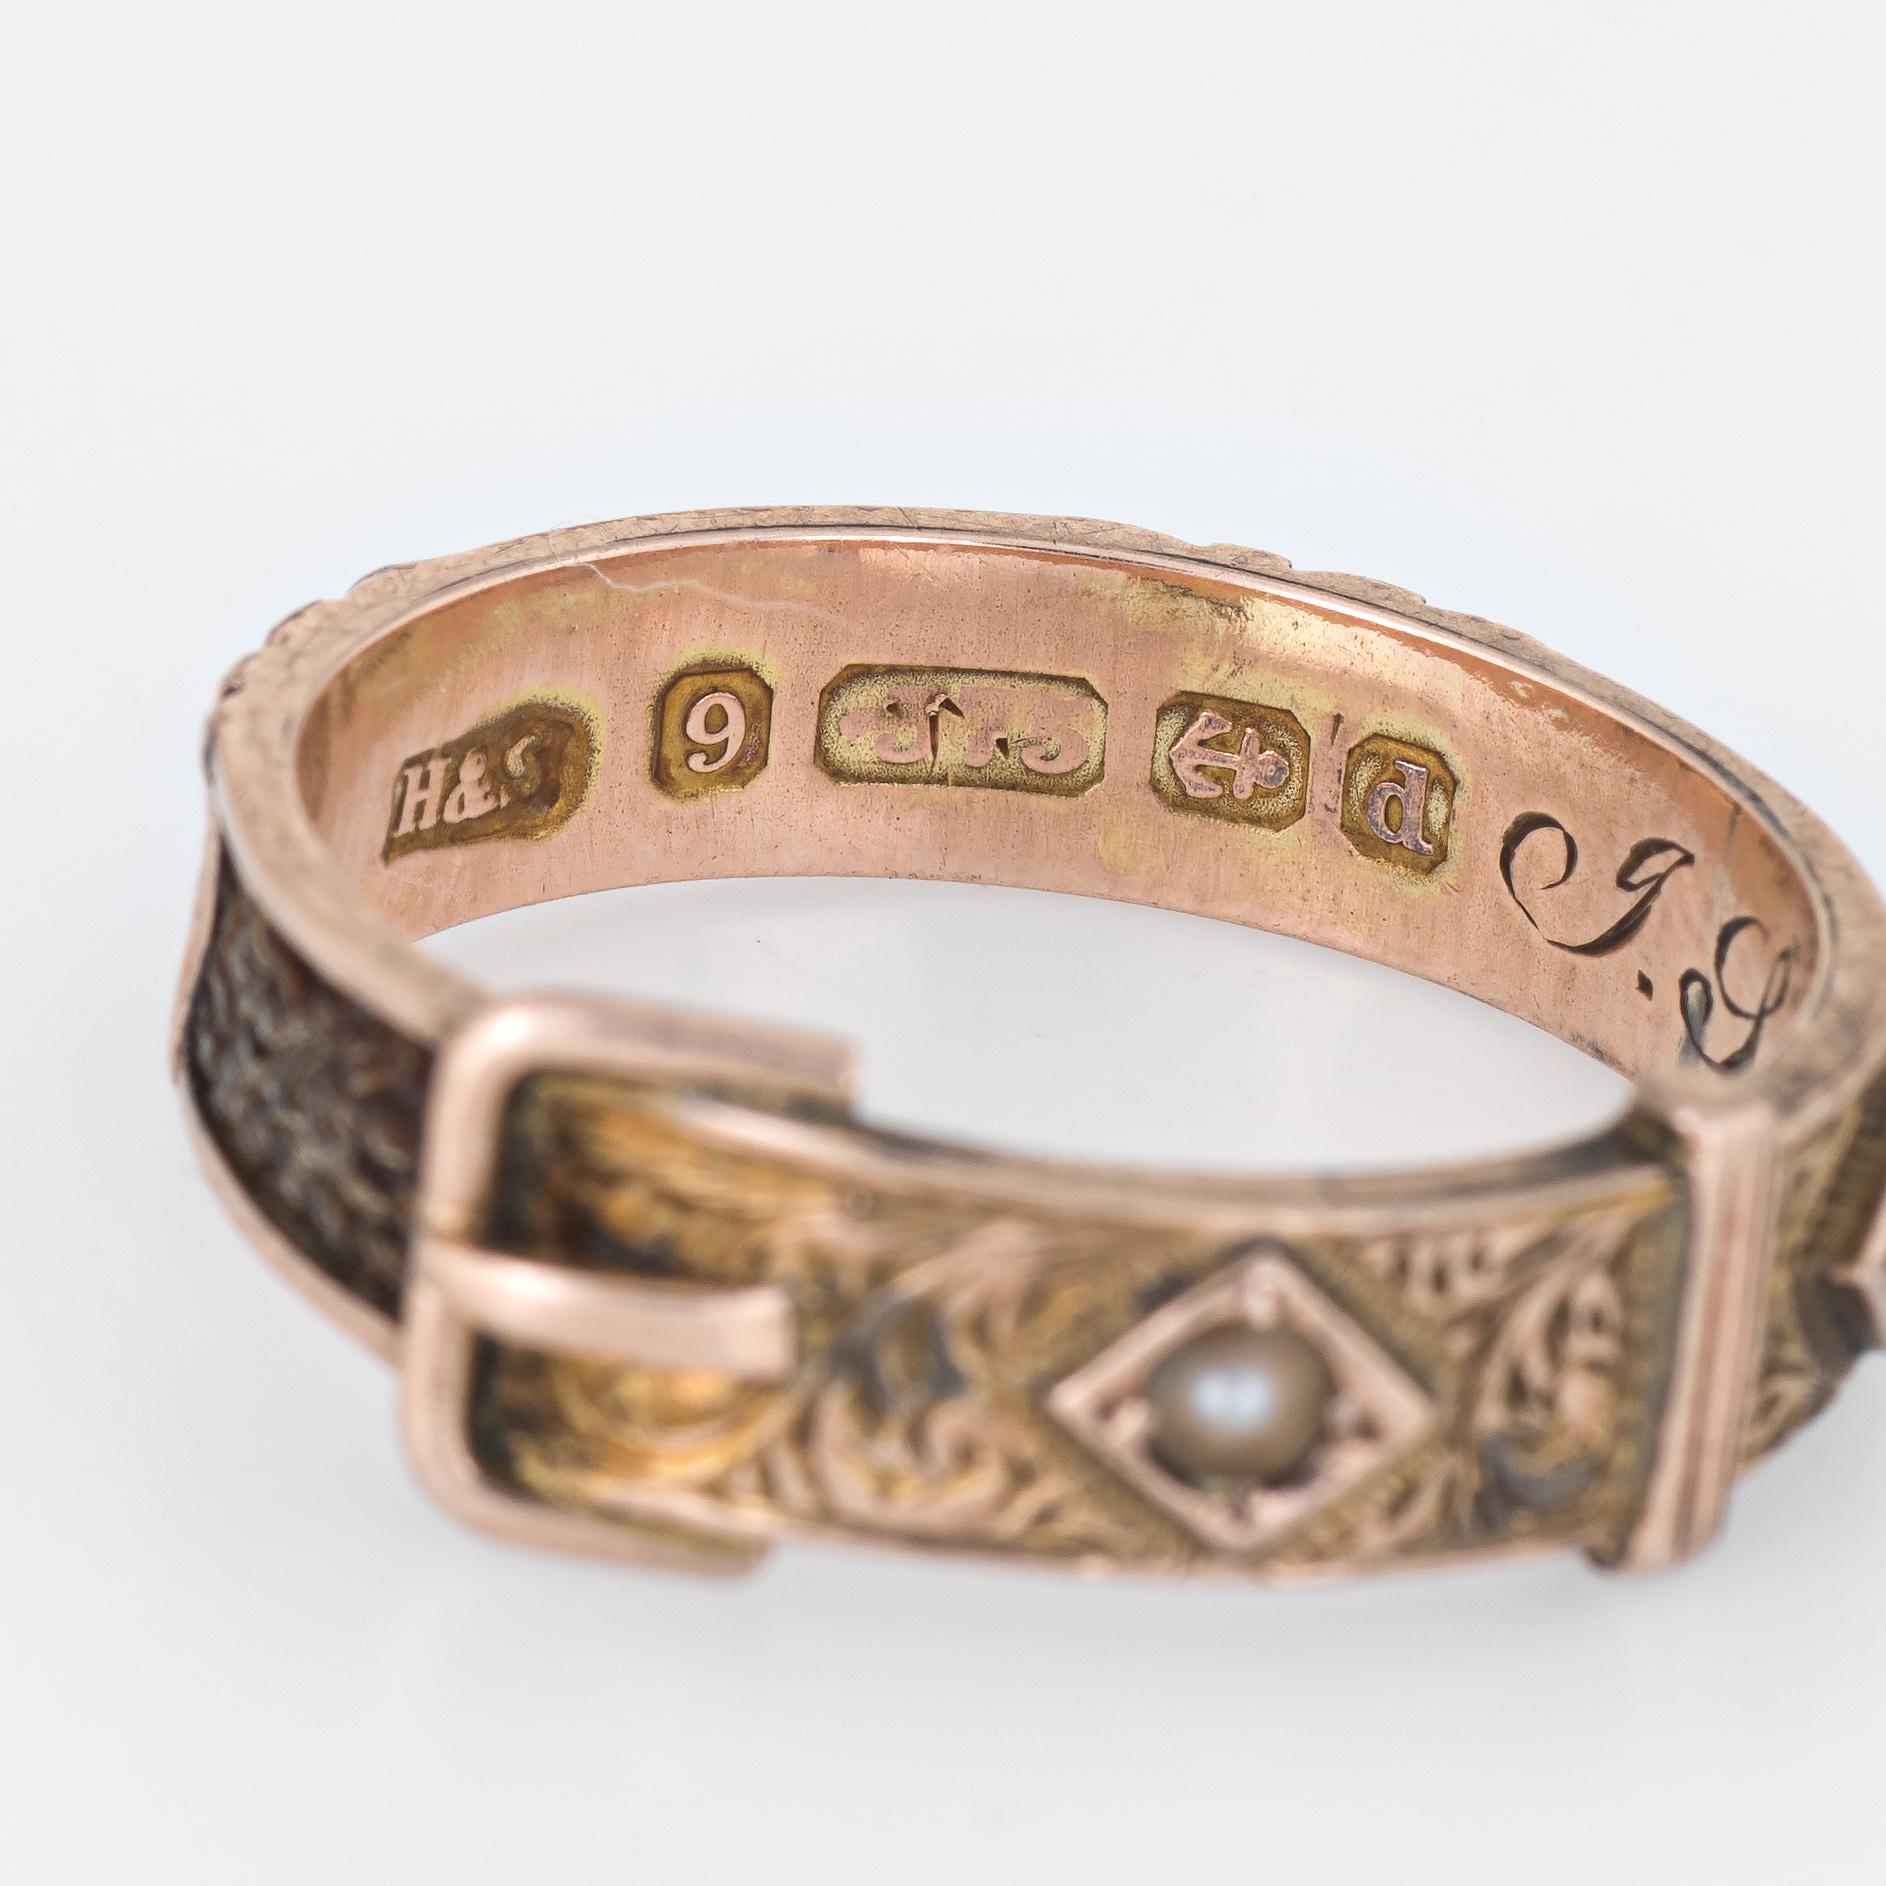 Antique Edwardian circa 1903 Hair Ring Buckle 9 Karat Rose Gold Mourning Jewelry 1